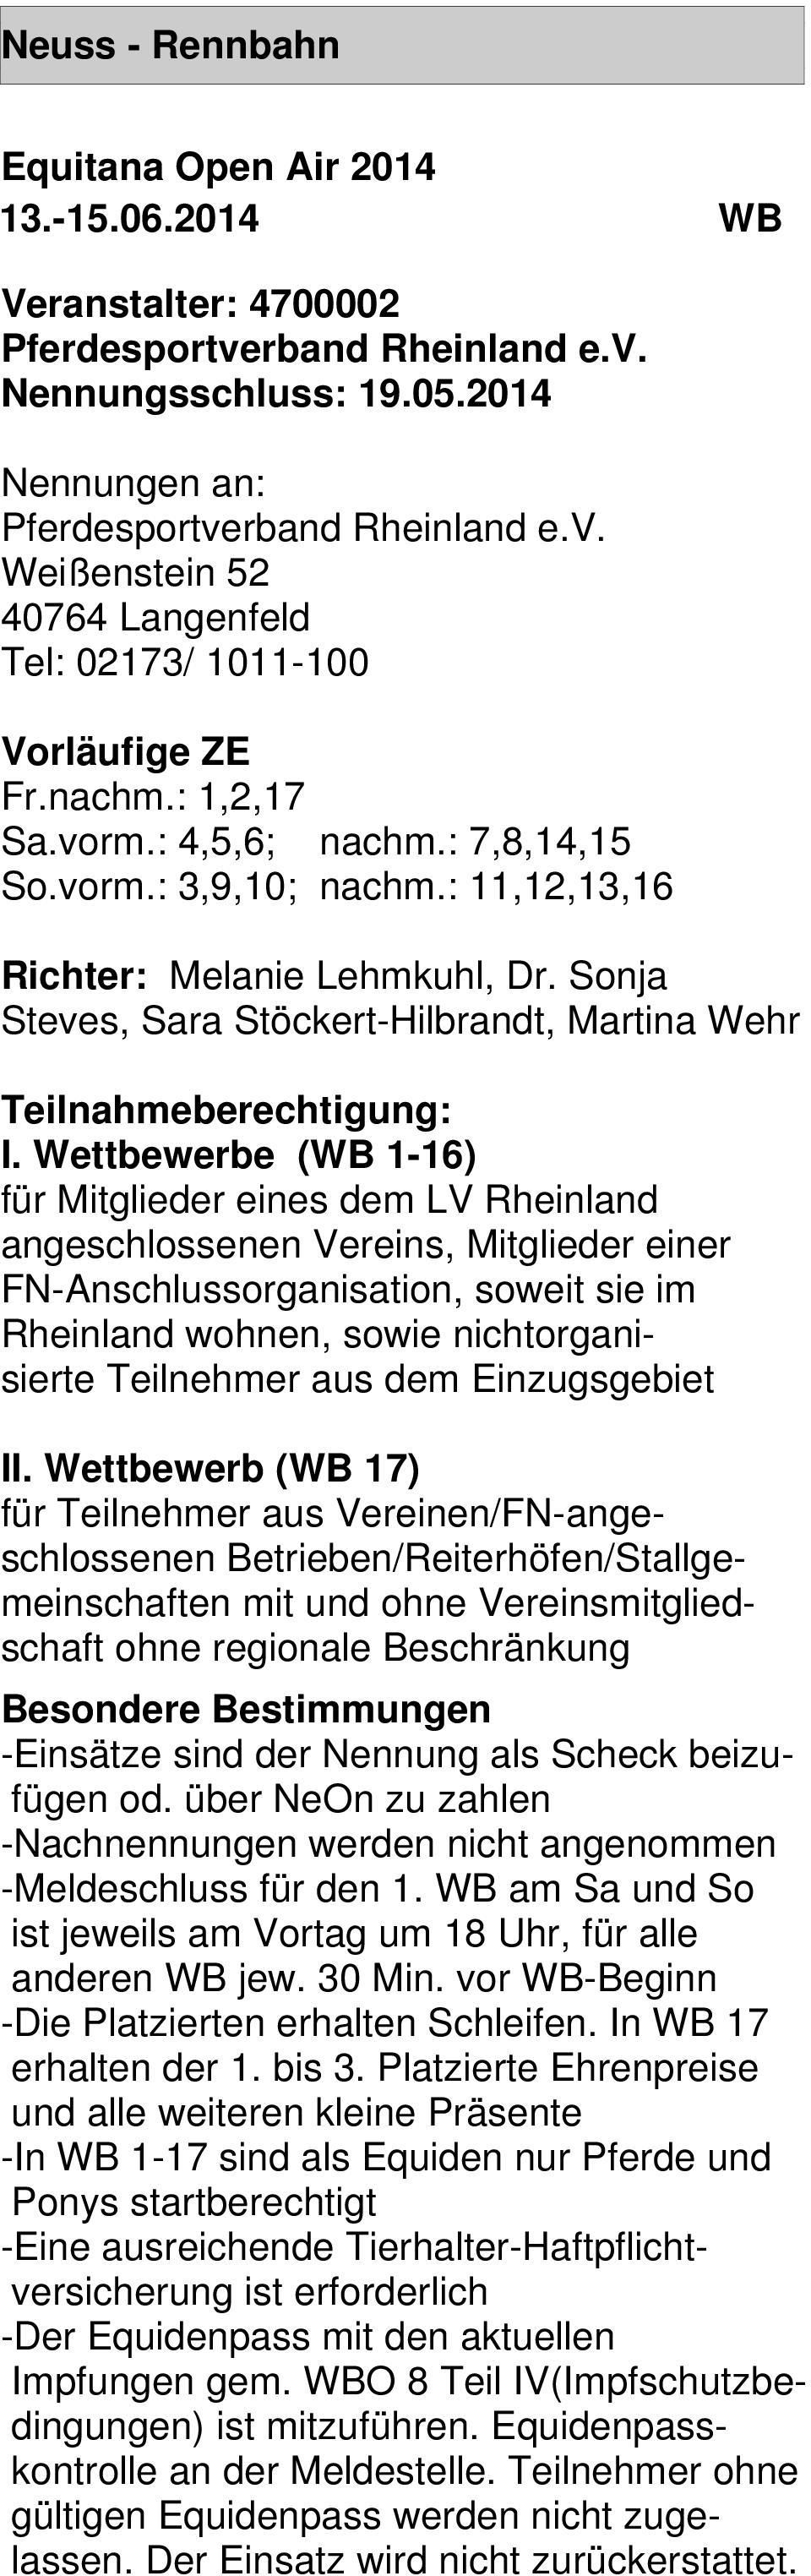 Wettbewerbe (WB 1-16) für Mitglieder eines dem LV Rheinland angeschlossenen Vereins, Mitglieder einer FN-Anschlussorganisation, soweit sie im Rheinland wohnen, sowie nichtorganisierte Teilnehmer aus